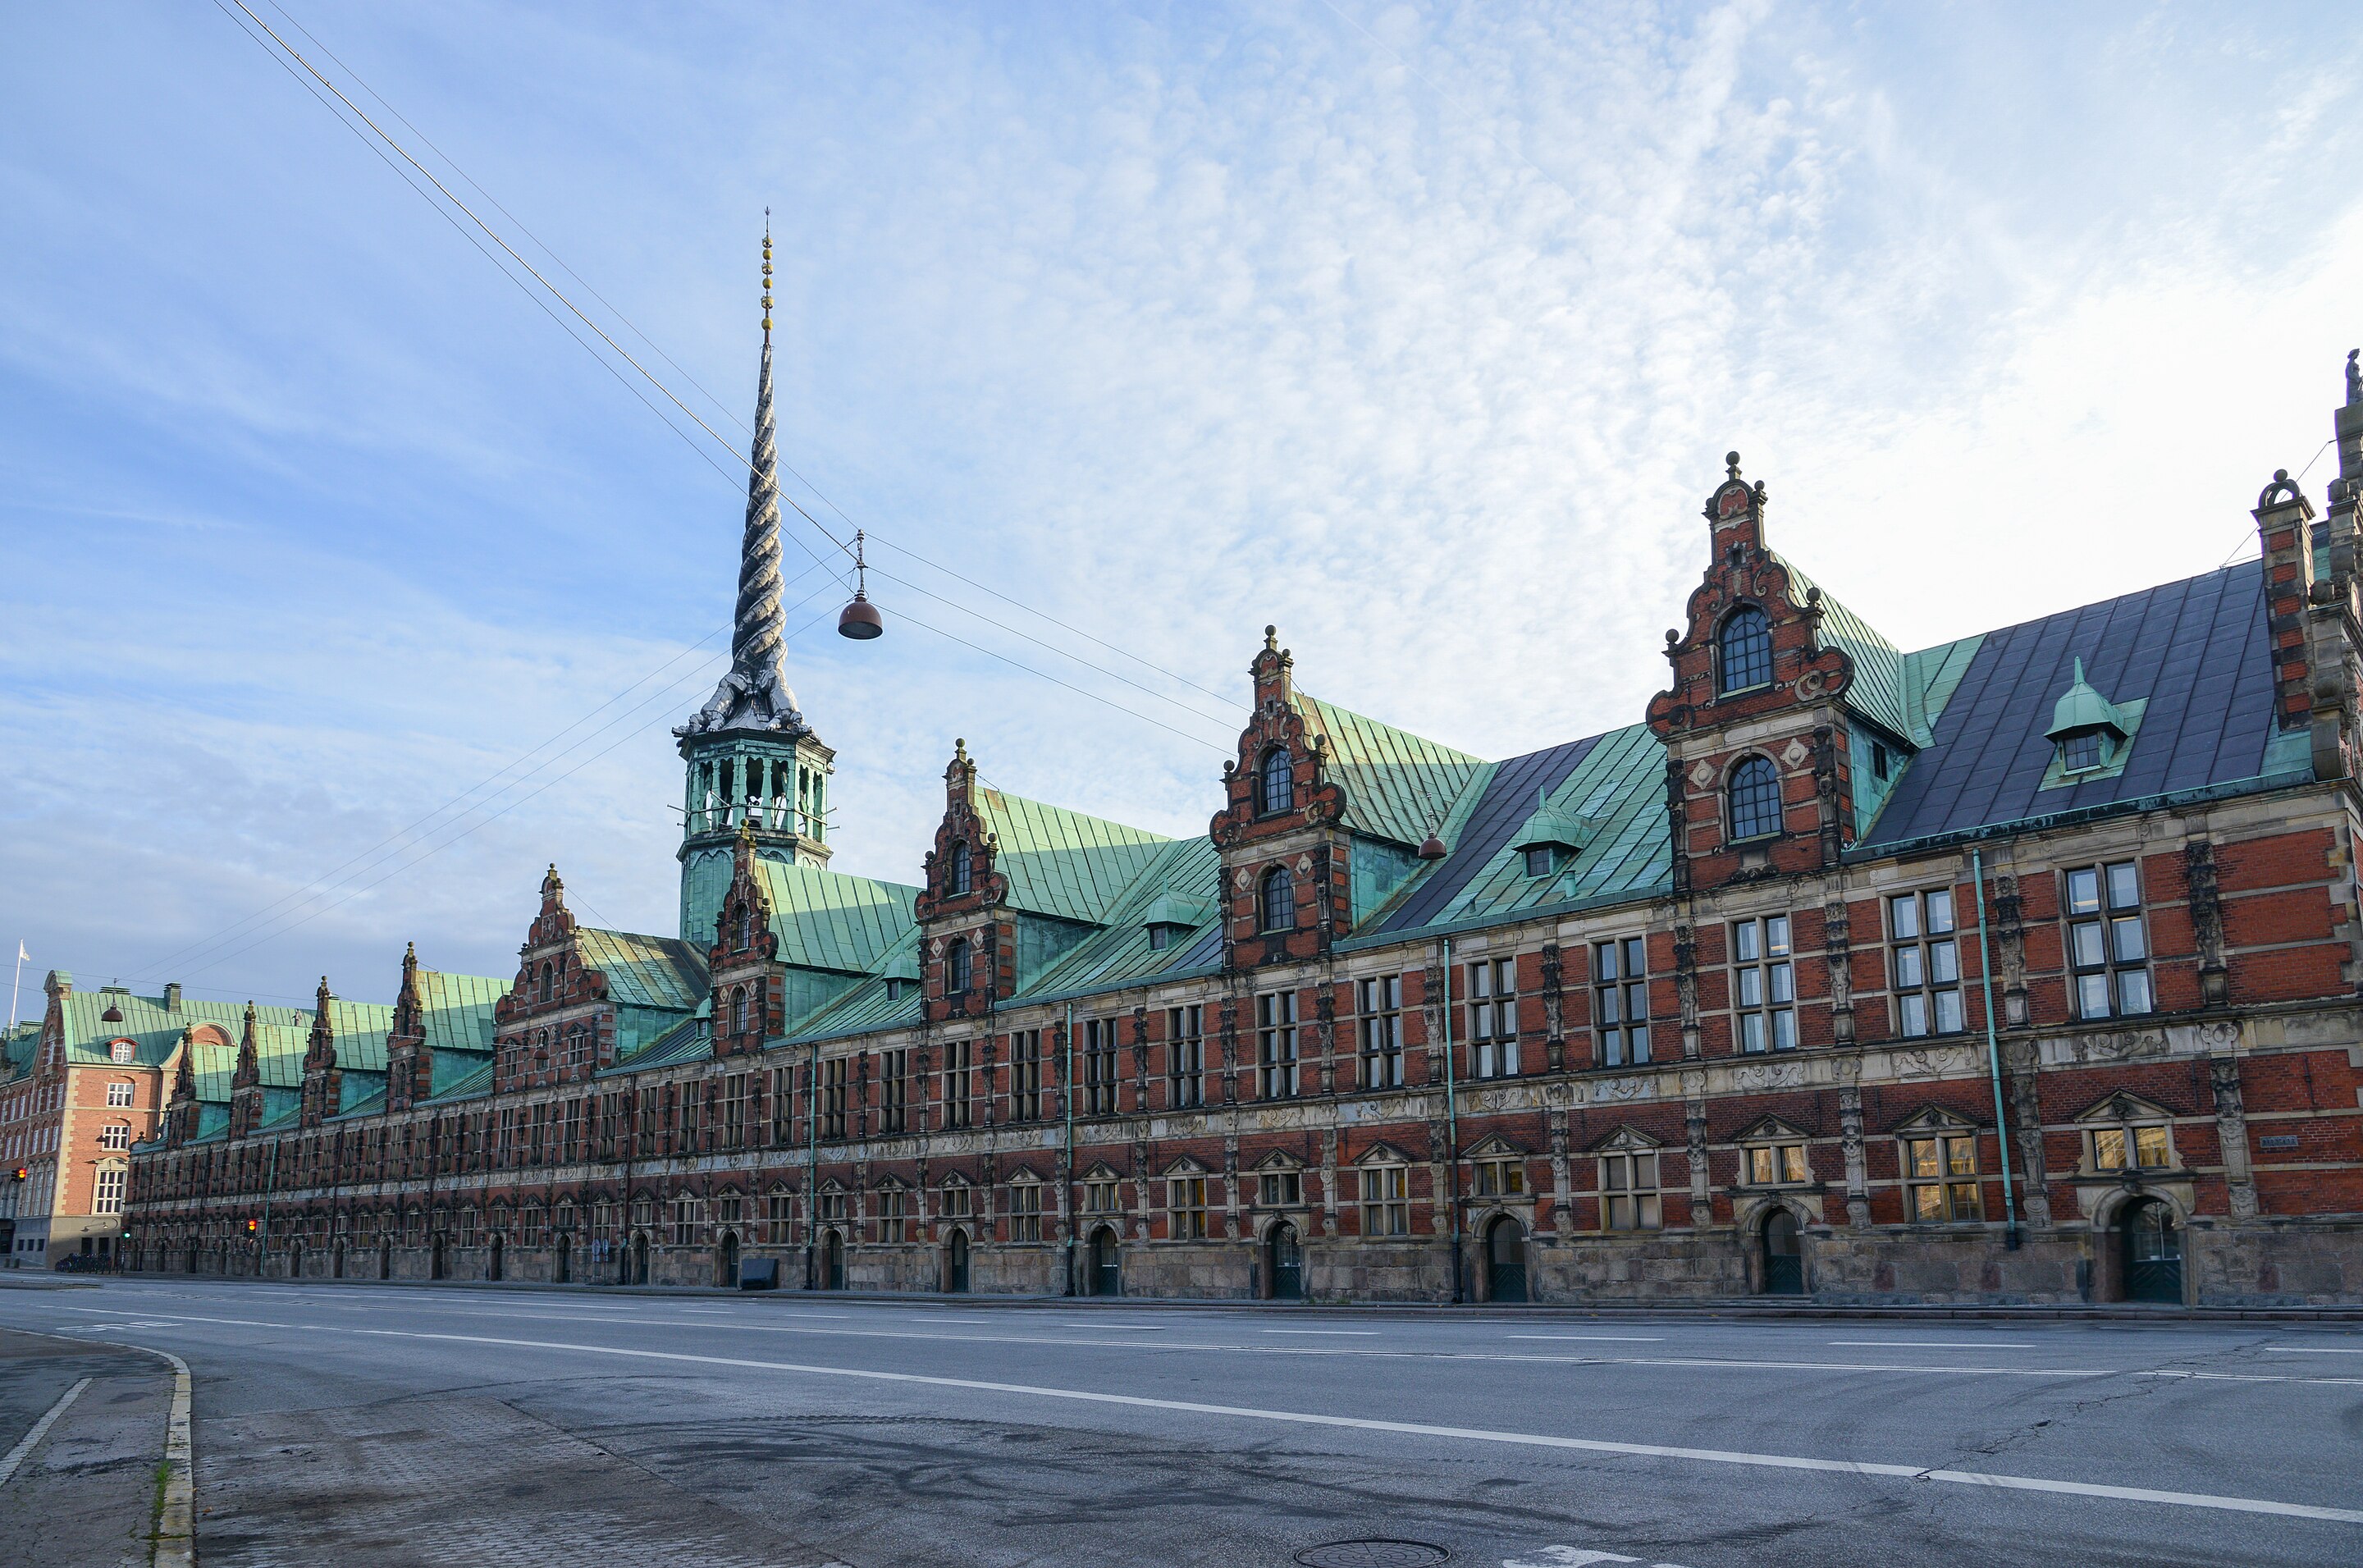 Старая фондовая биржа (Børsbygningen) в Копенгагене, Дания, 29 октября 2014 года. В этом здании до 1974 года размещалась Копенгагенская фондовая биржа  